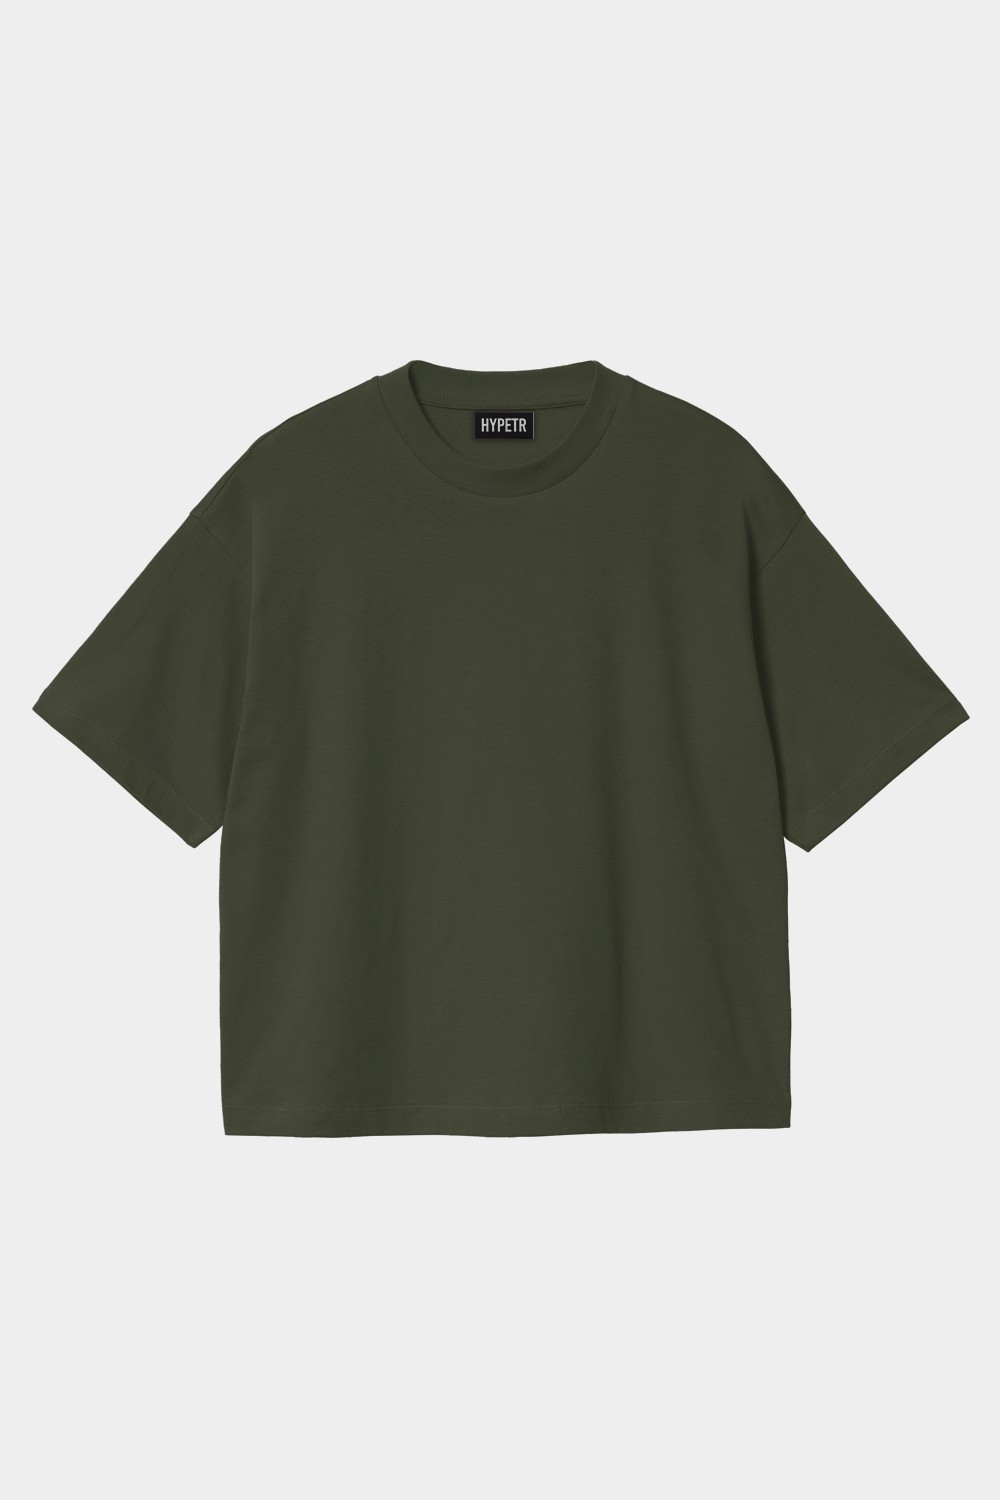 Oversized Basic T Shirt (HYPE-14)